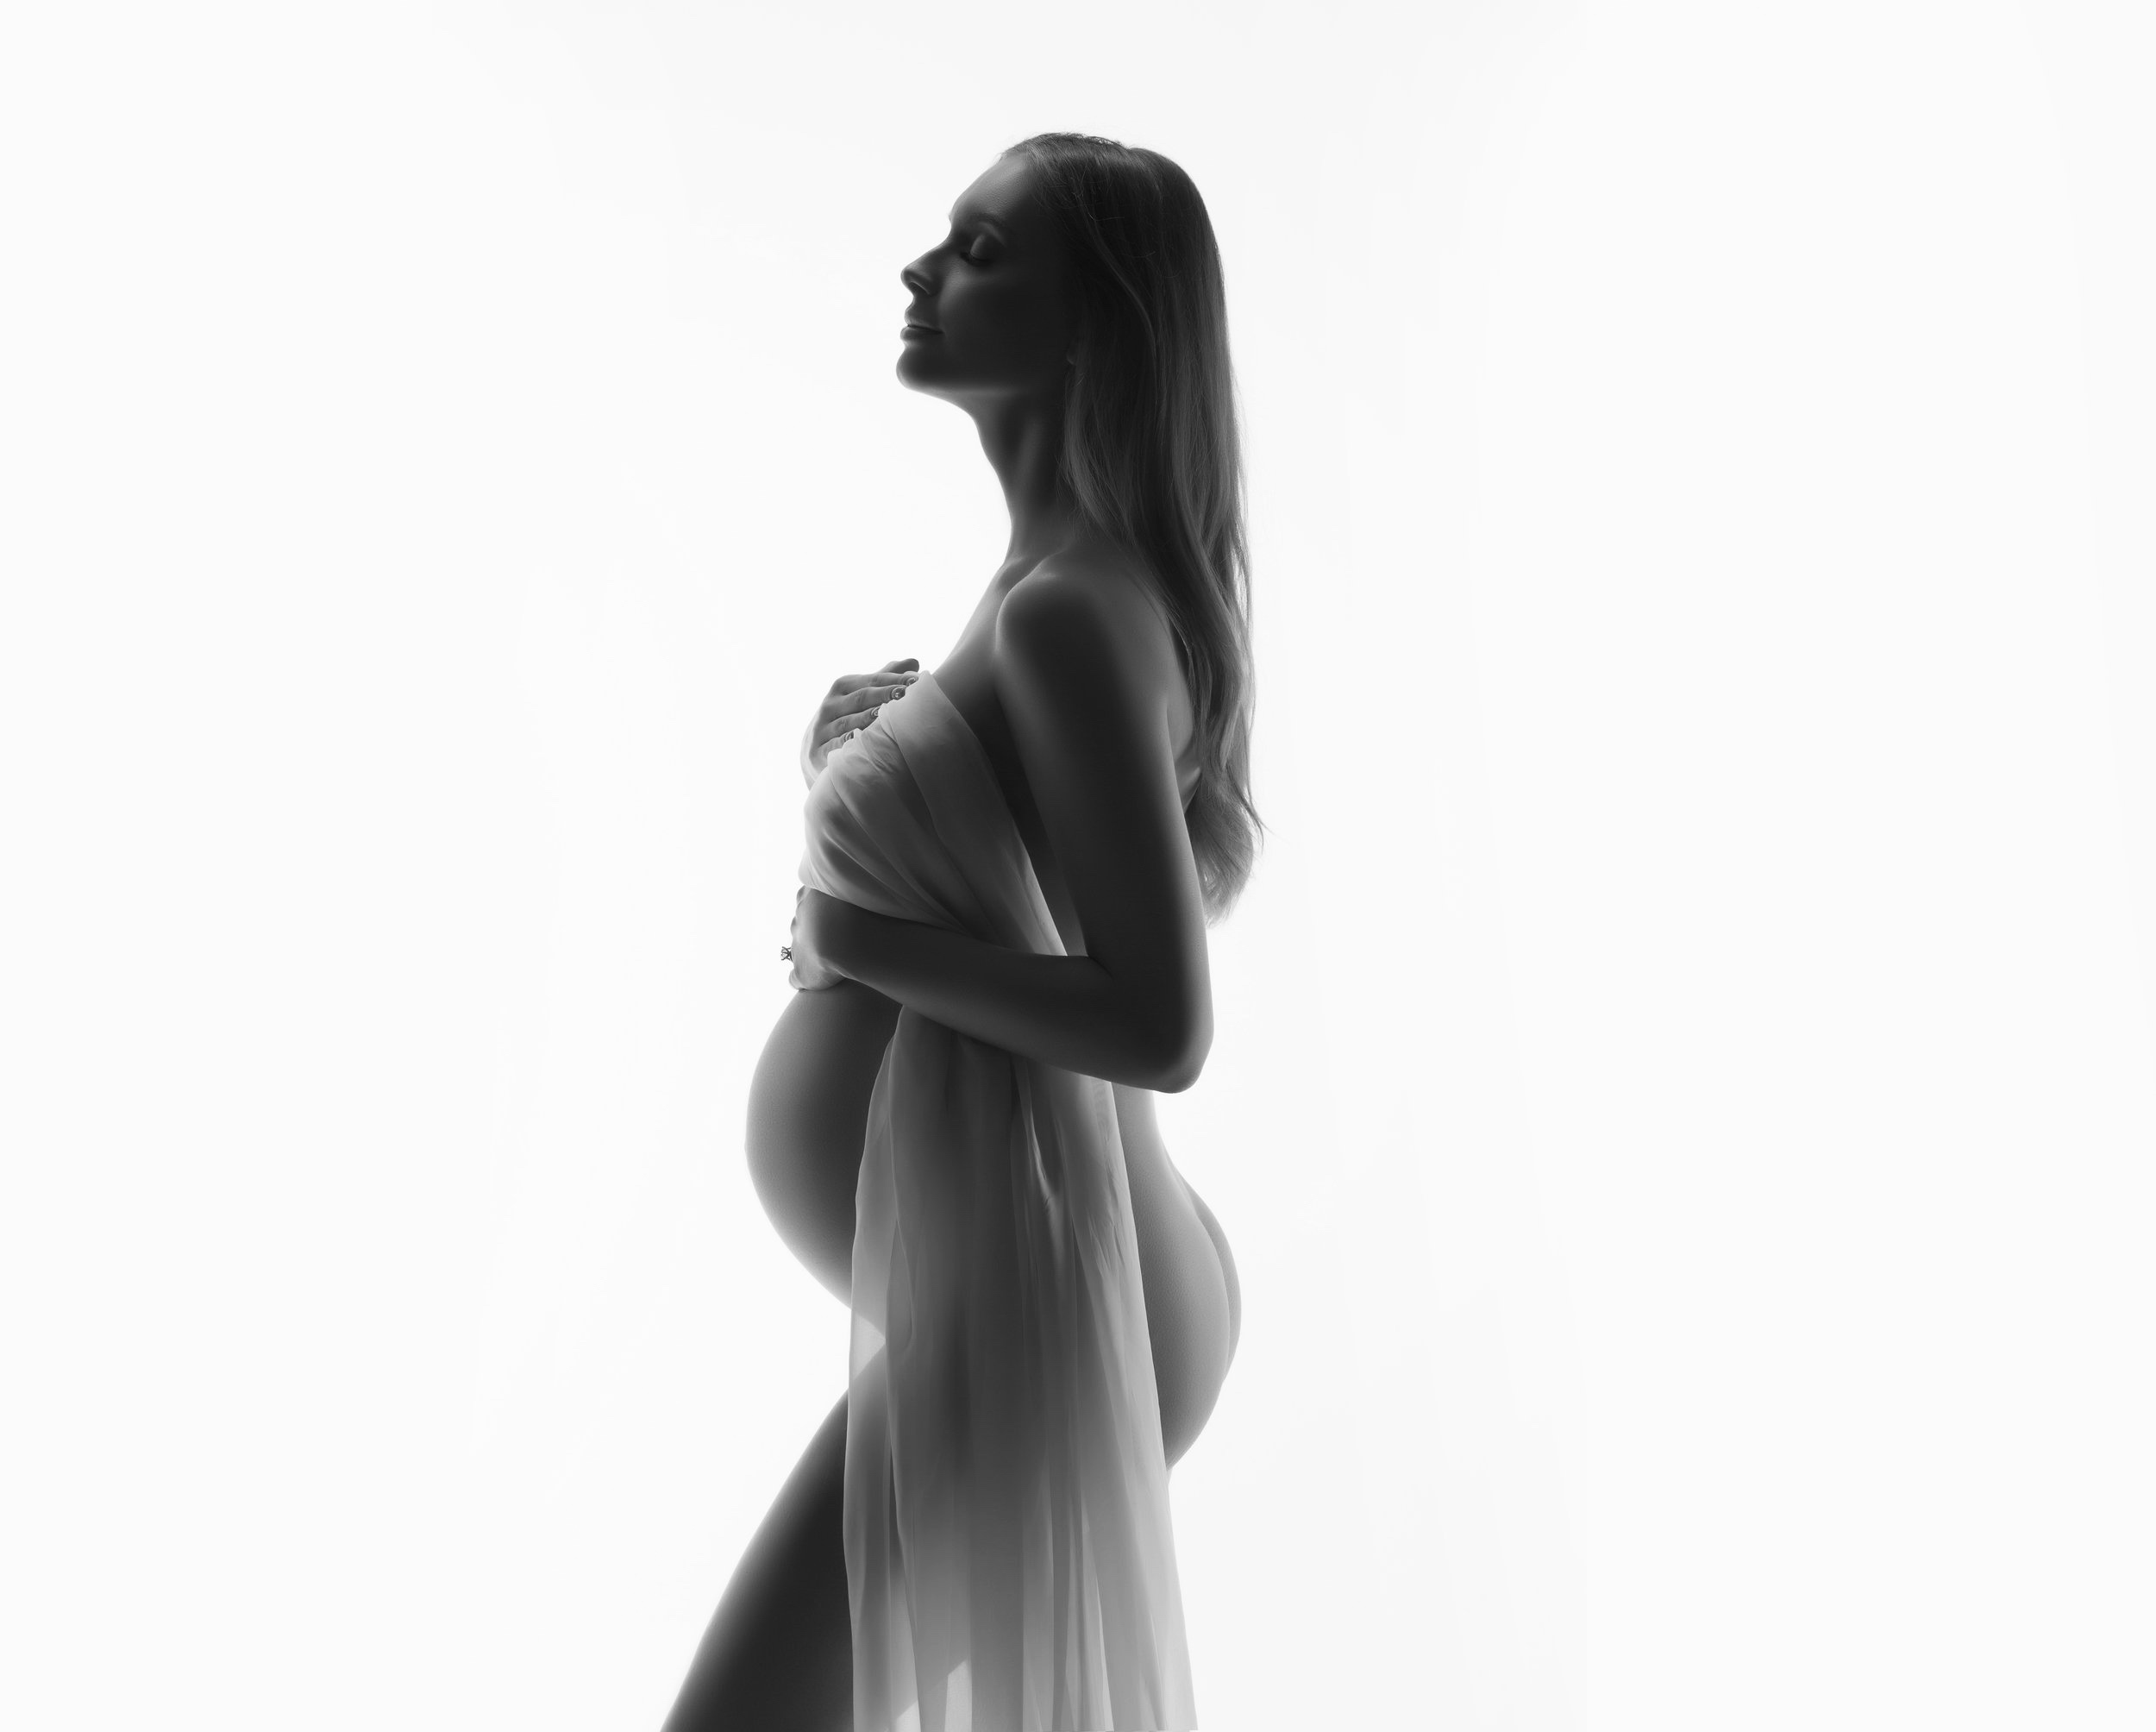 Prince style maternity photoshoot